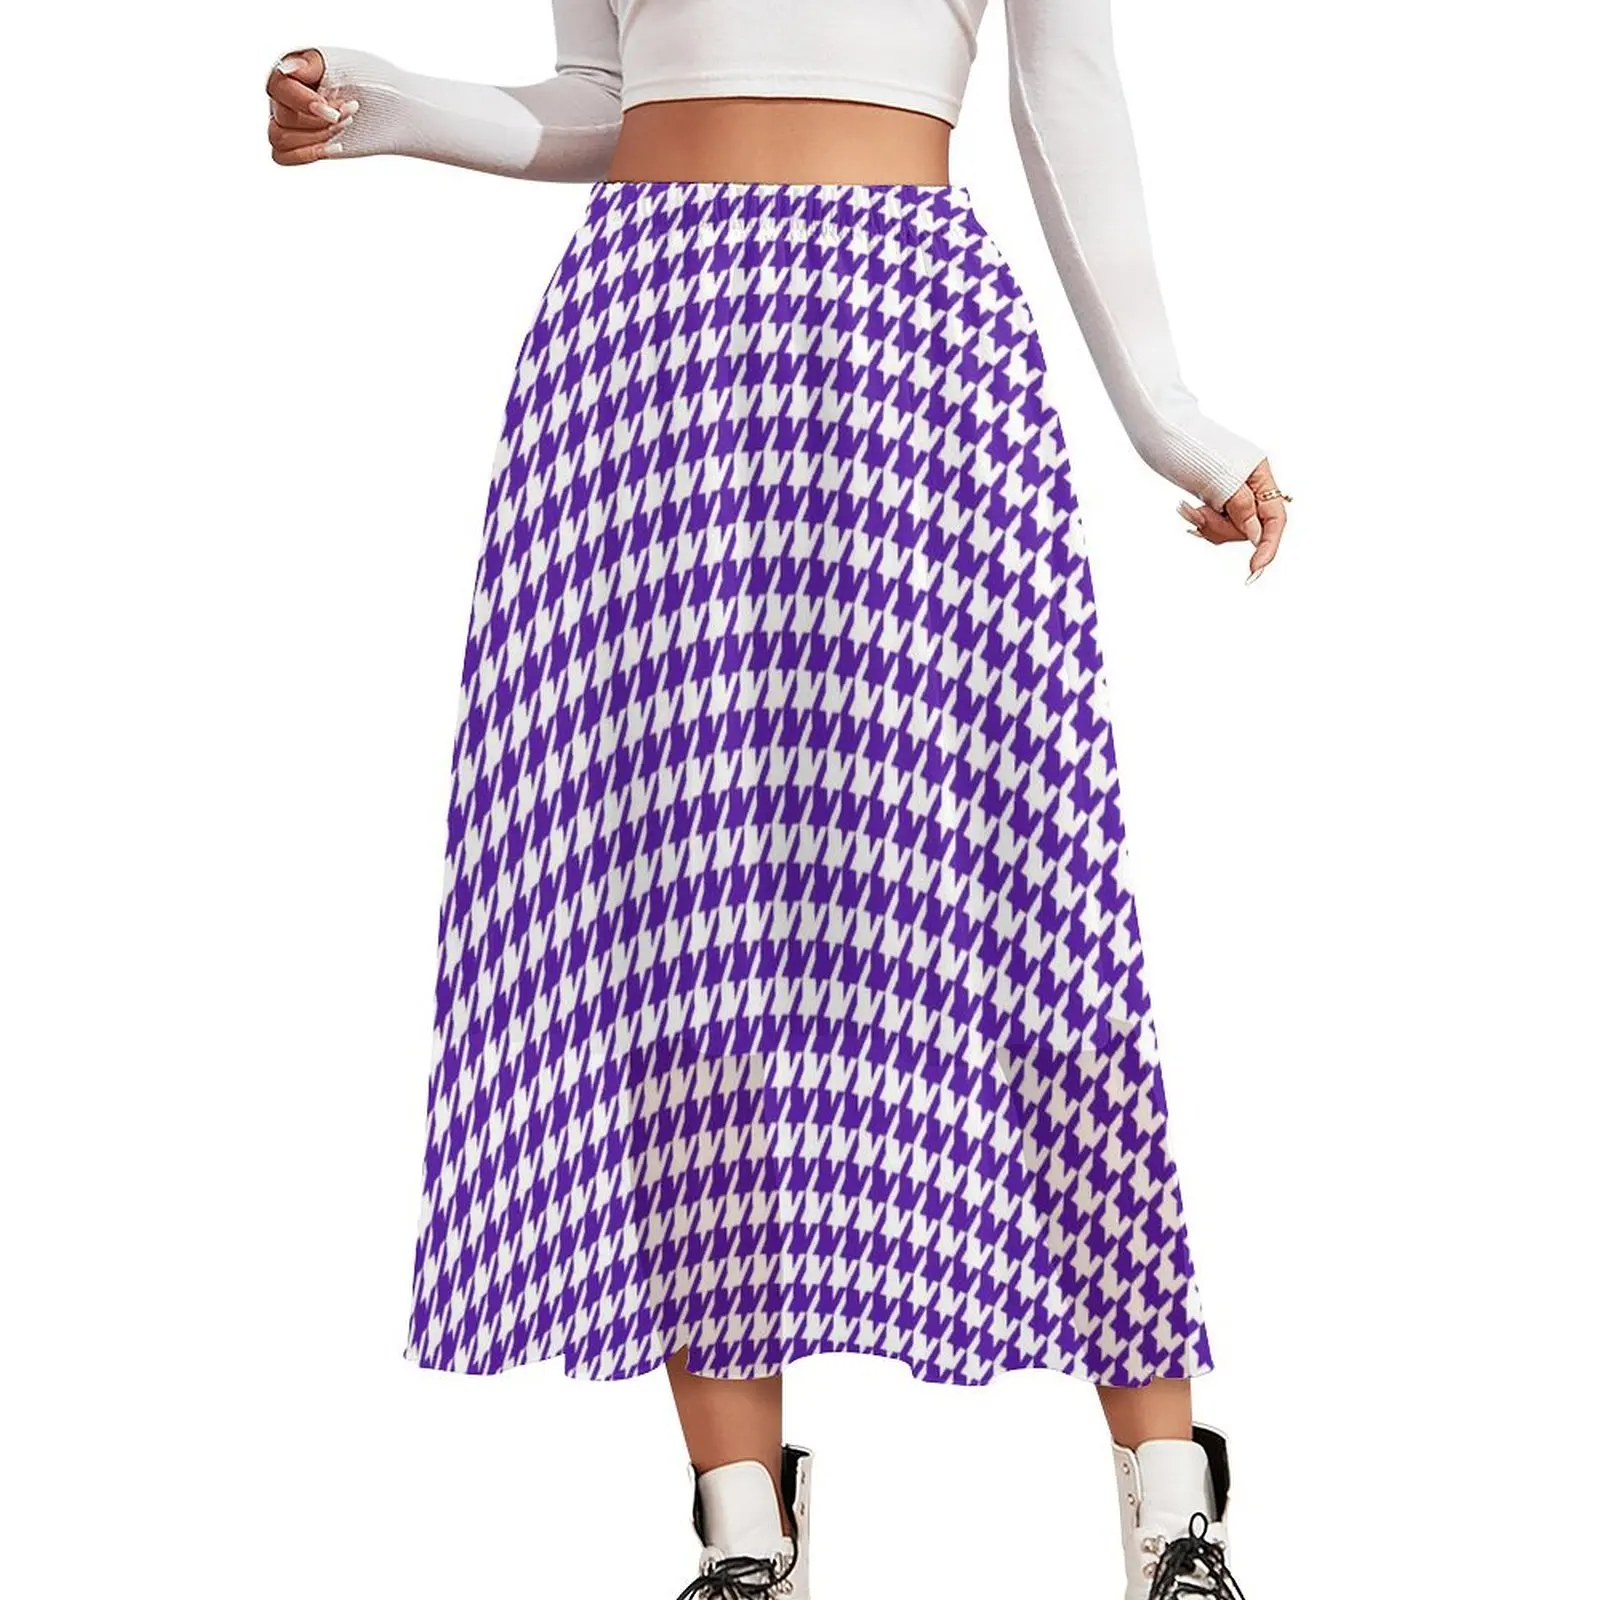 

Юбка «гусиные лапки» Женская, винтажная юбка в стиле бохо, трапециевидная юбка с графическим принтом, с эластичным поясом, уличная одежда, большие размеры, белый и фиолетовый цвета